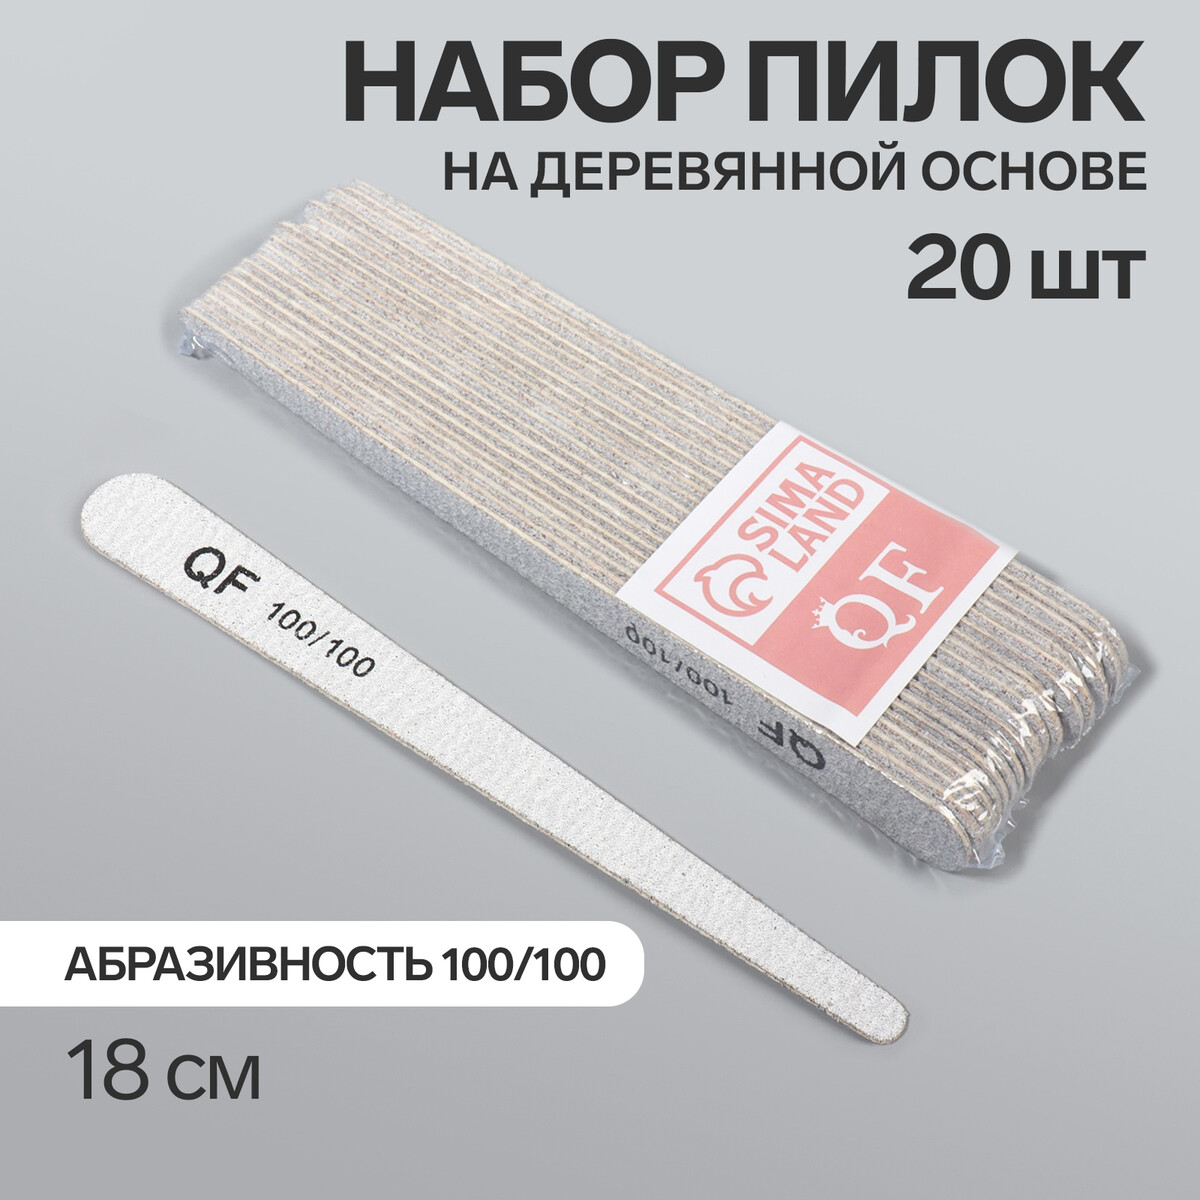 Пилка-наждак, набор 20 шт, деревянная основа, абразивность 100/100, 18 см, цвет серый палка основа для макраме деревянная без покрытия d 2 2 × 20 см